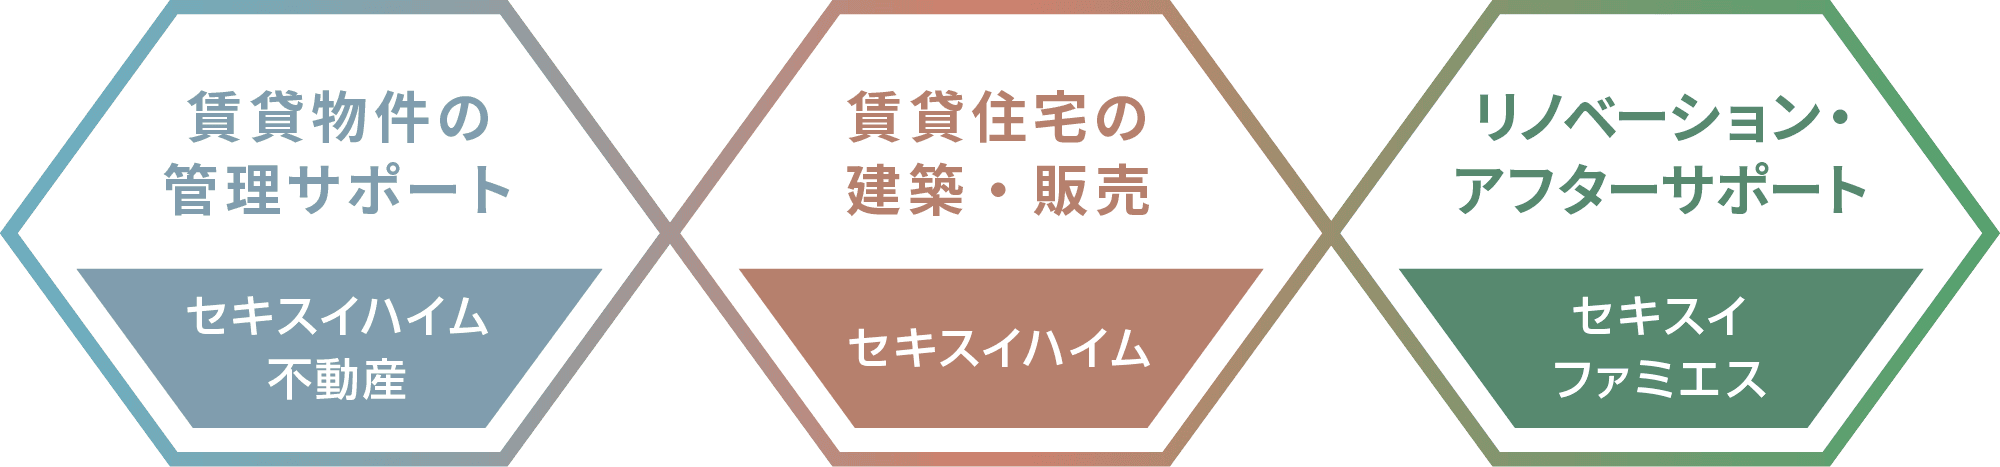 東京セキスイハイム_グループ会社の得意領域を結集したトータルサポートを実現します。